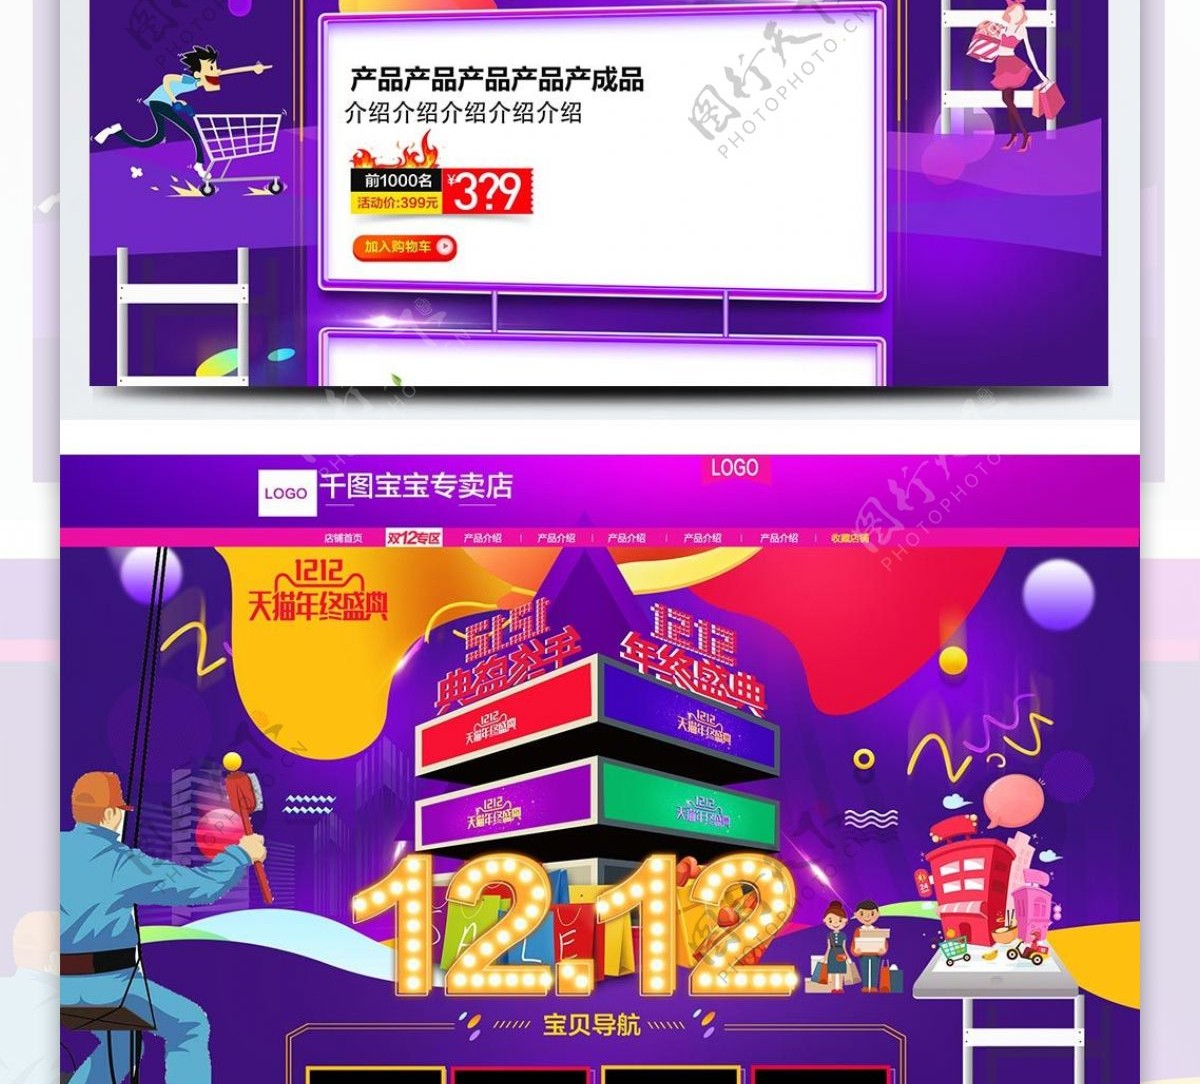 炫彩天猫双12年终钜惠淘宝双十二pc端电商首页模板